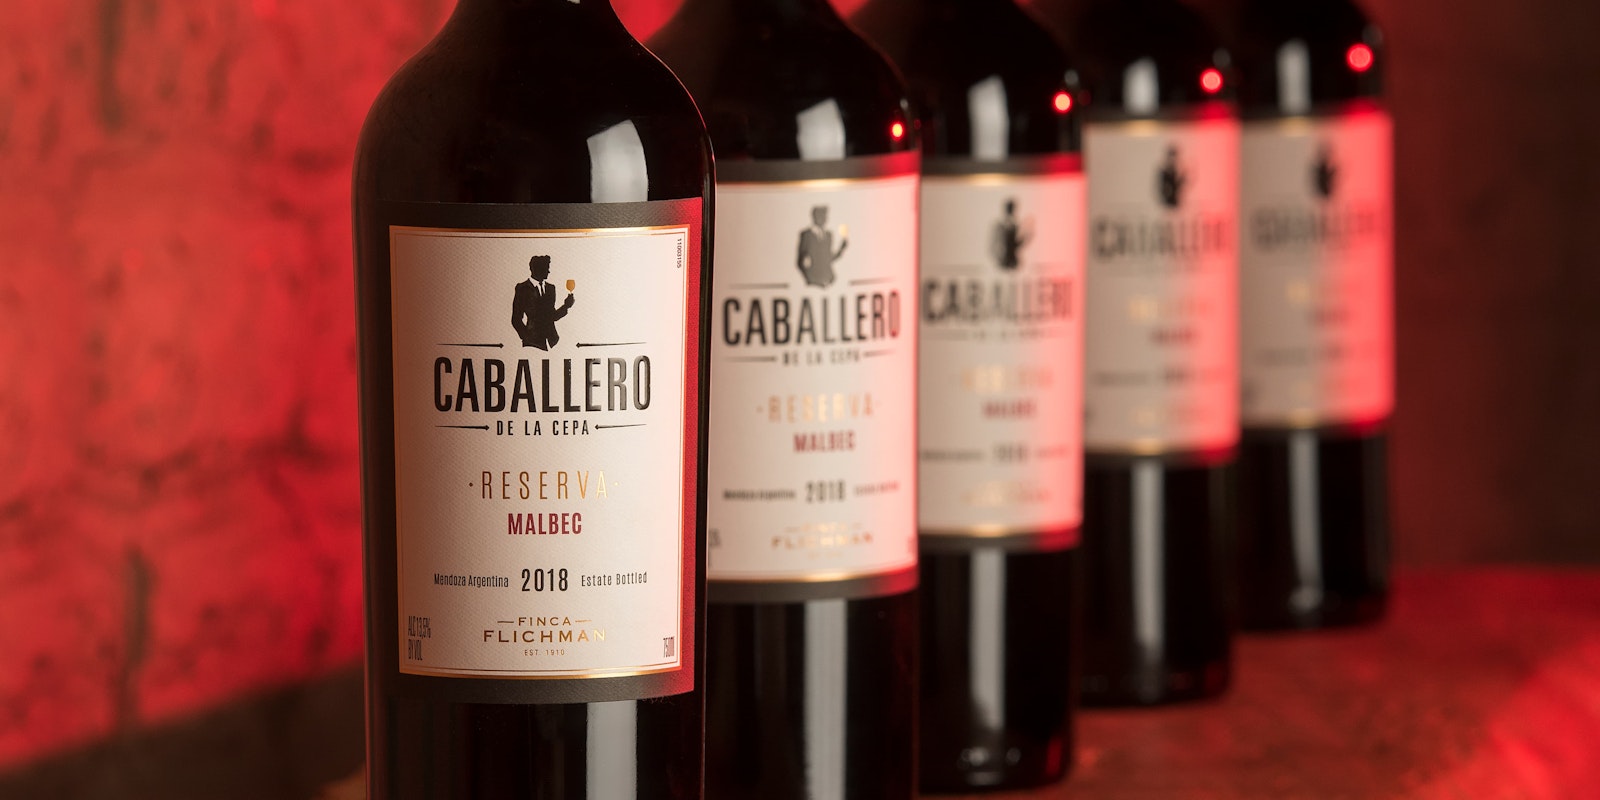 Caballero wine bottles